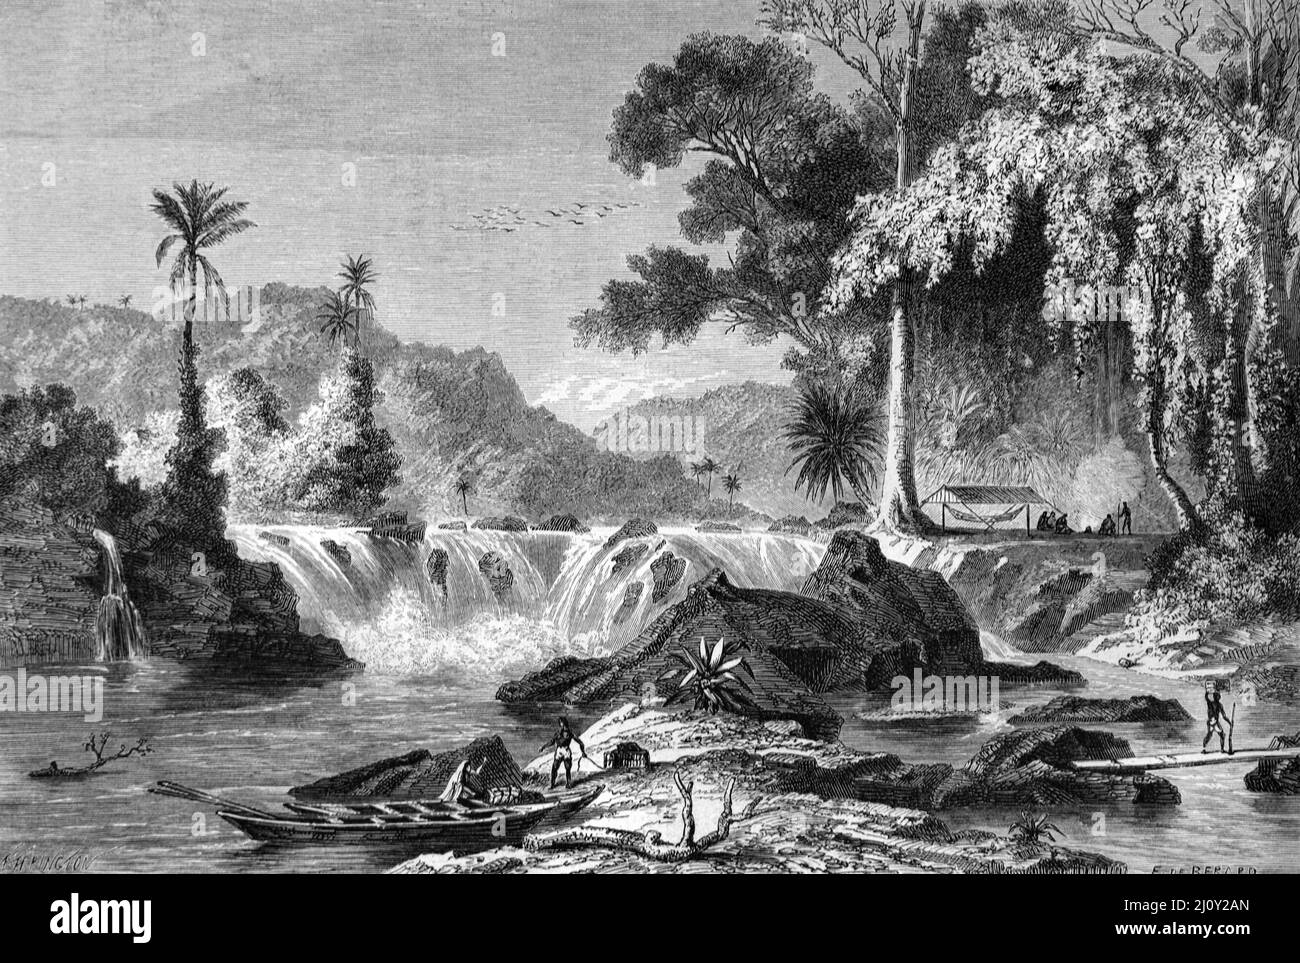 Chutes d'Orinduik ou chute d'eau sur la rivière Ireng, montagnes Pakaraima, Guyana, Amérique du Sud. Illustration ancienne ou gravure 1860. Banque D'Images